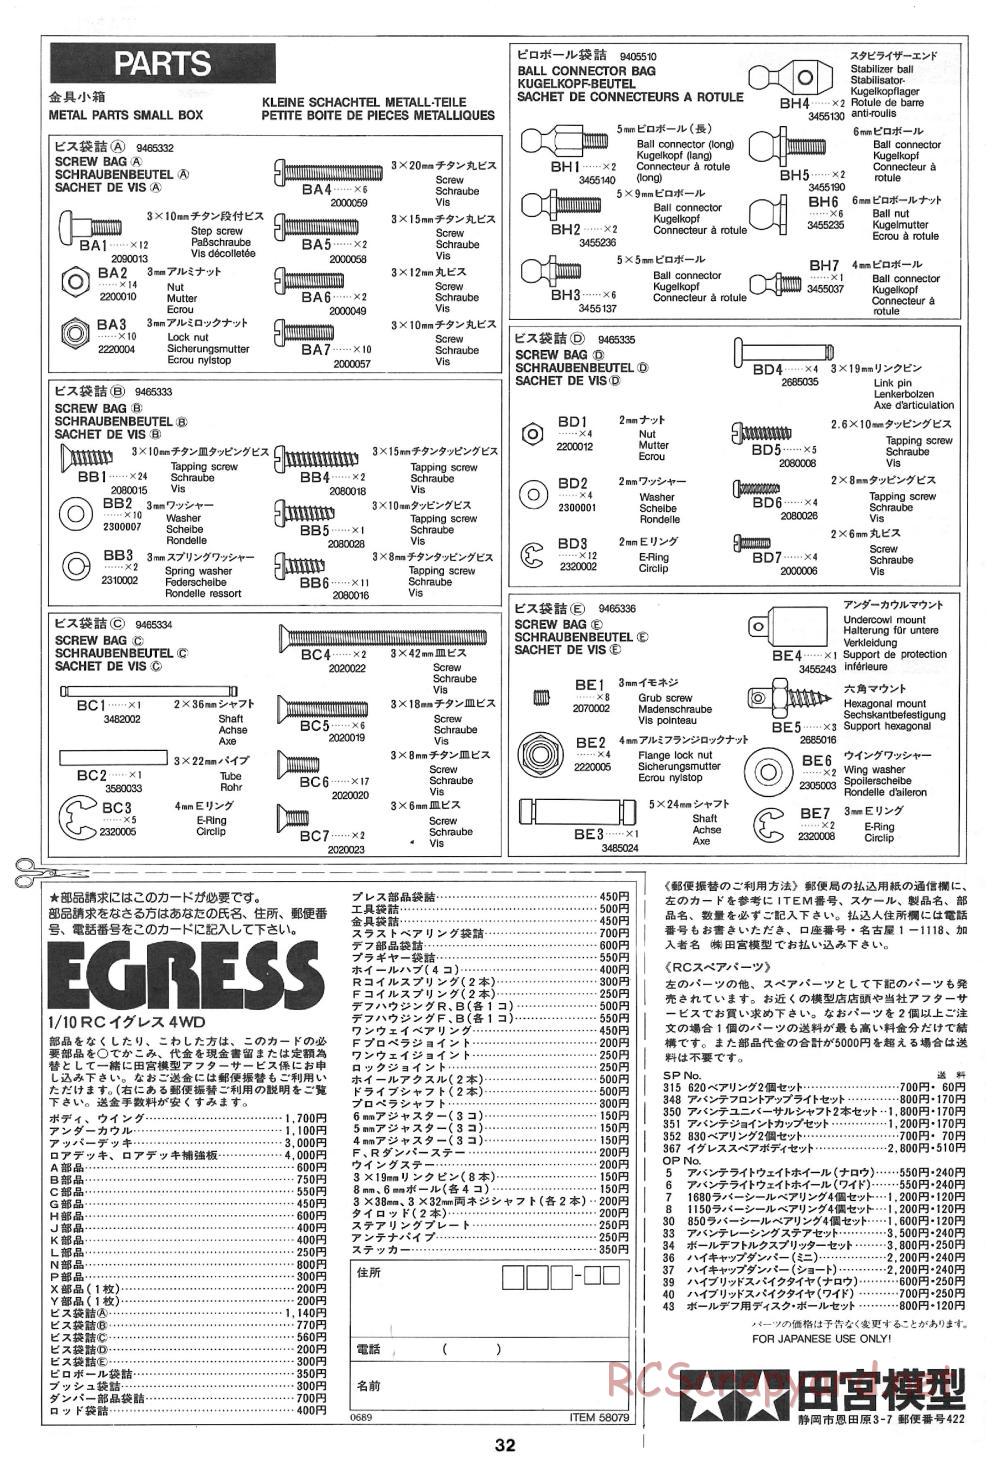 Tamiya - Egress - 58079 - Manual - Page 32